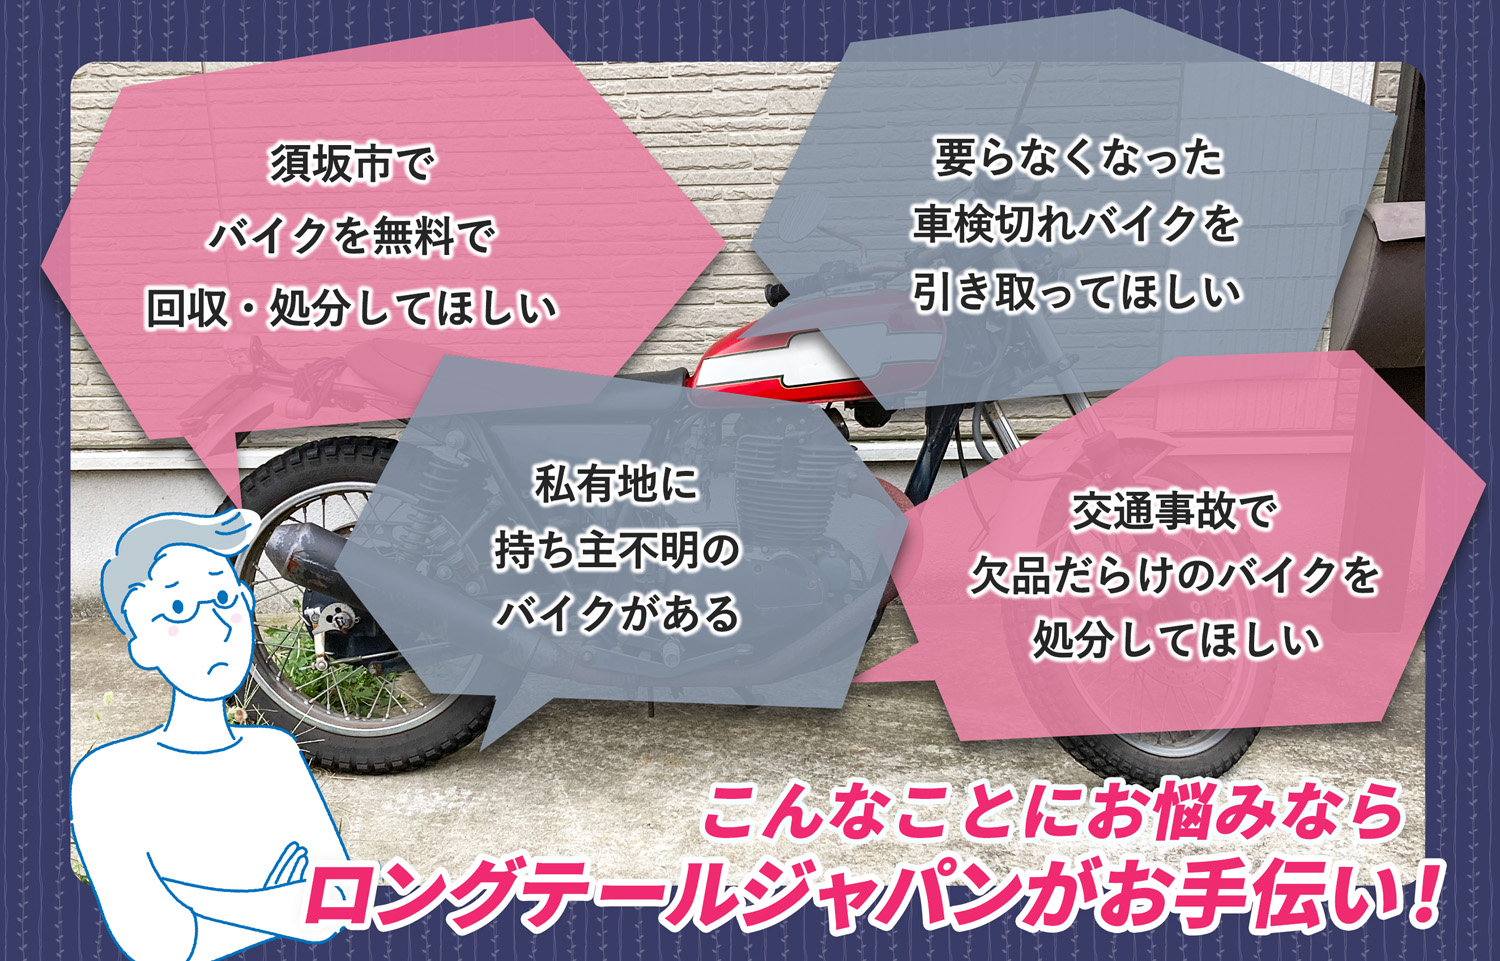 須坂市でこんなバイクの処分にお困りでしたらバイク無料回収処分隊がお手伝いいたします。